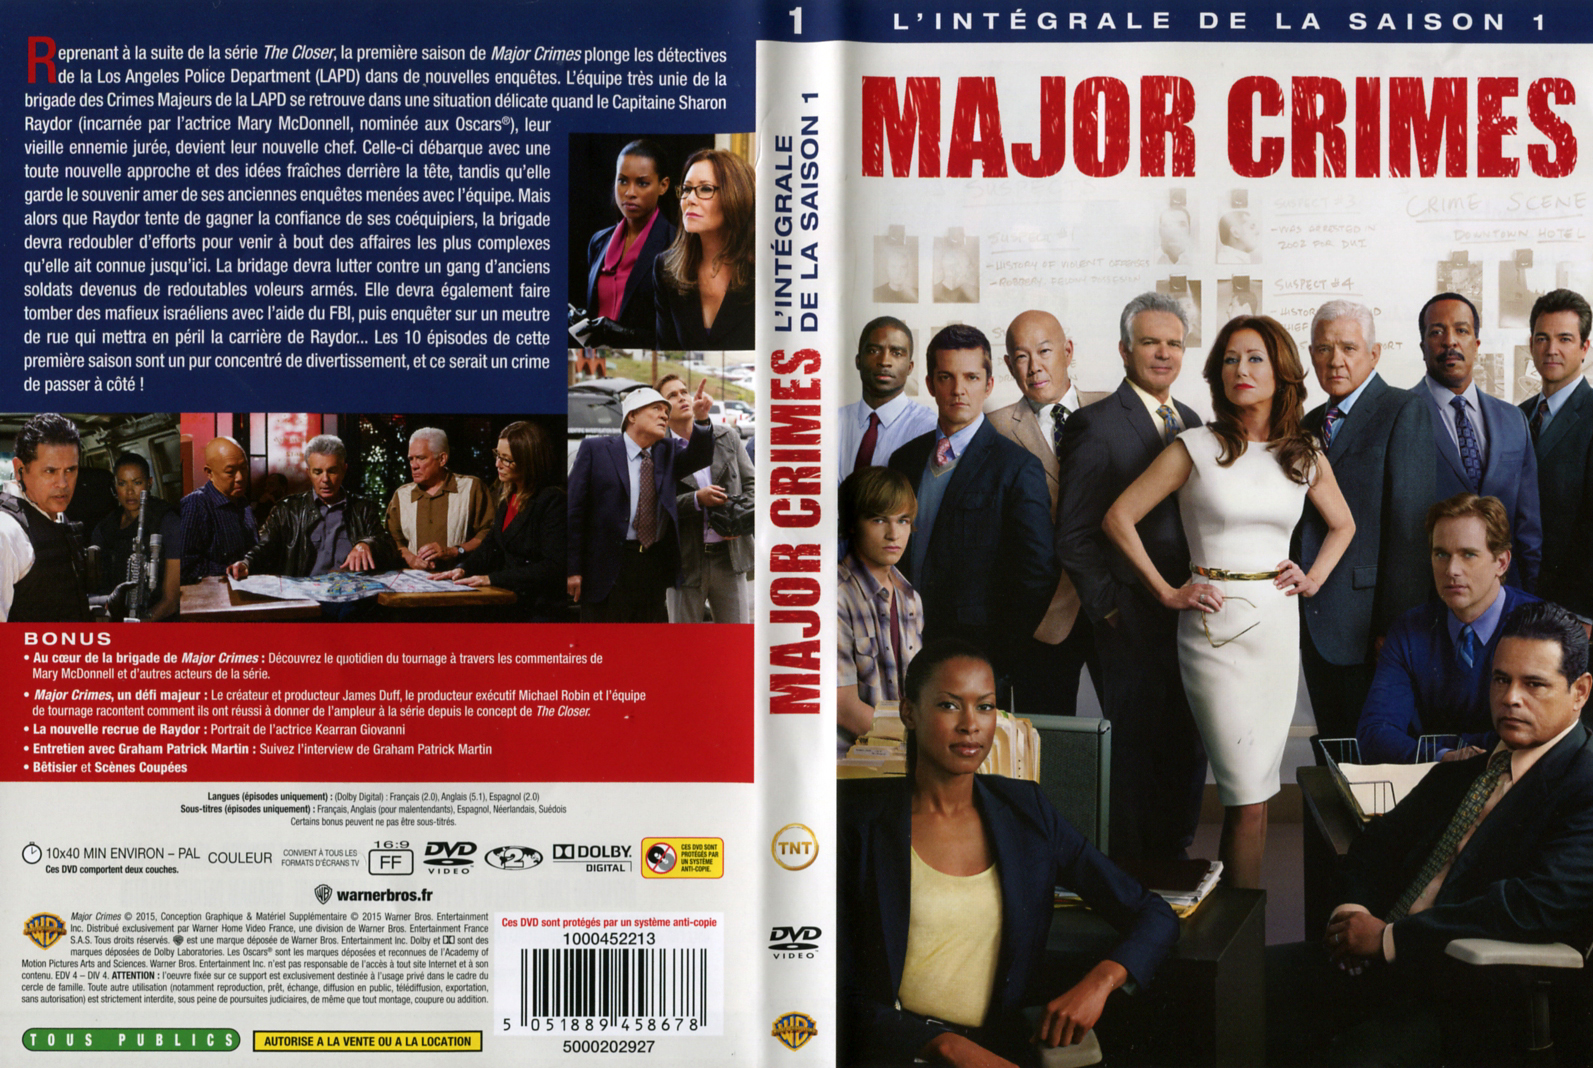 Jaquette DVD Major Crimes saison 1